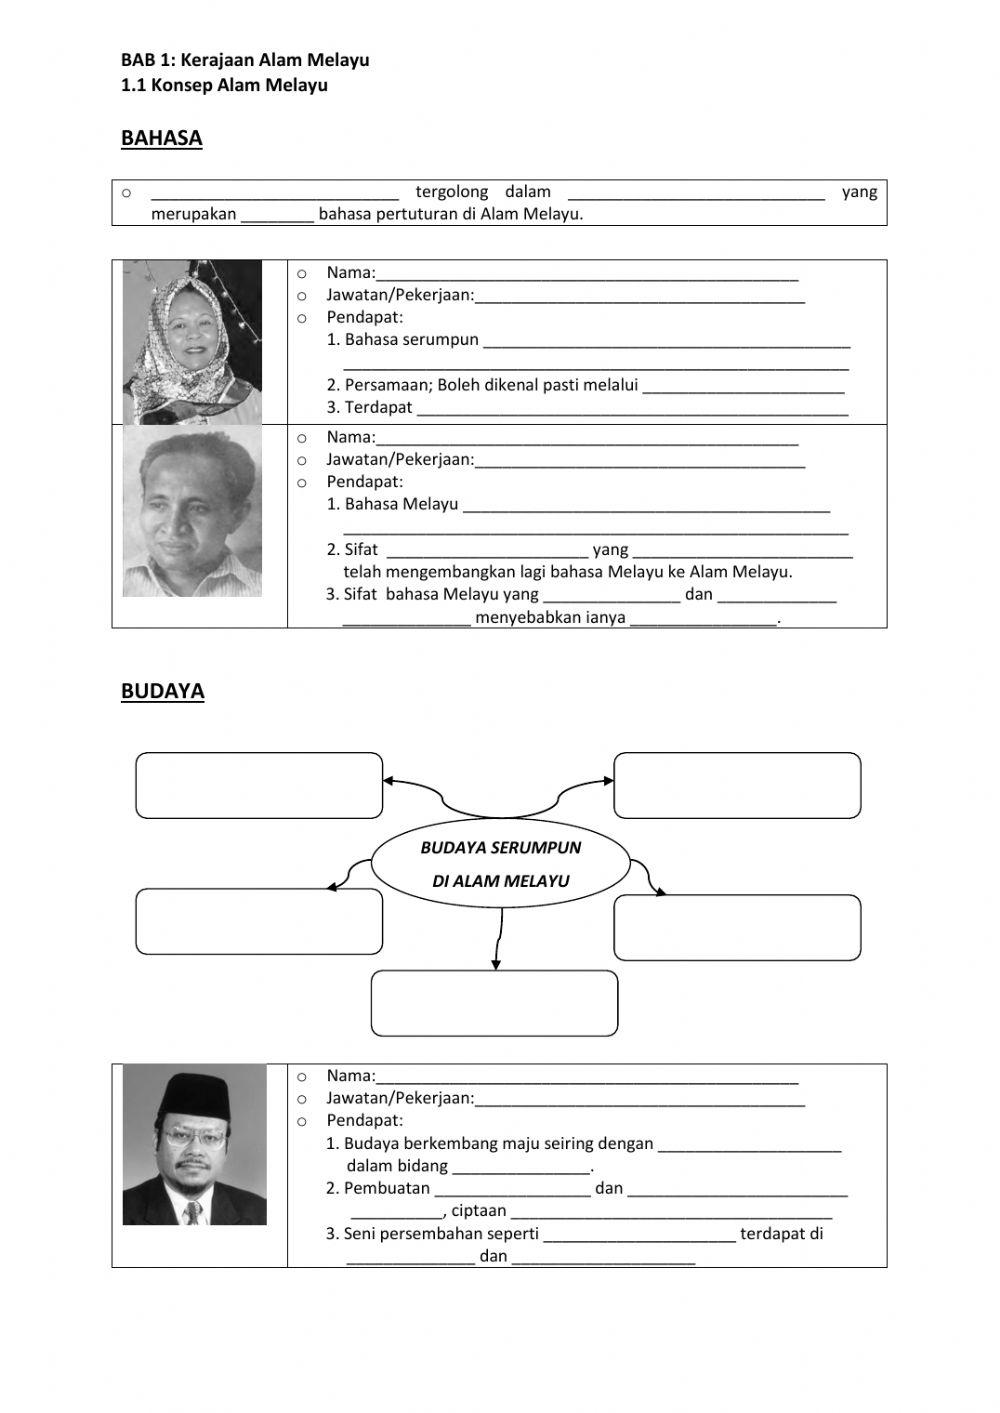 Bab 1 Kerajaan Alam Melayu (1.1)